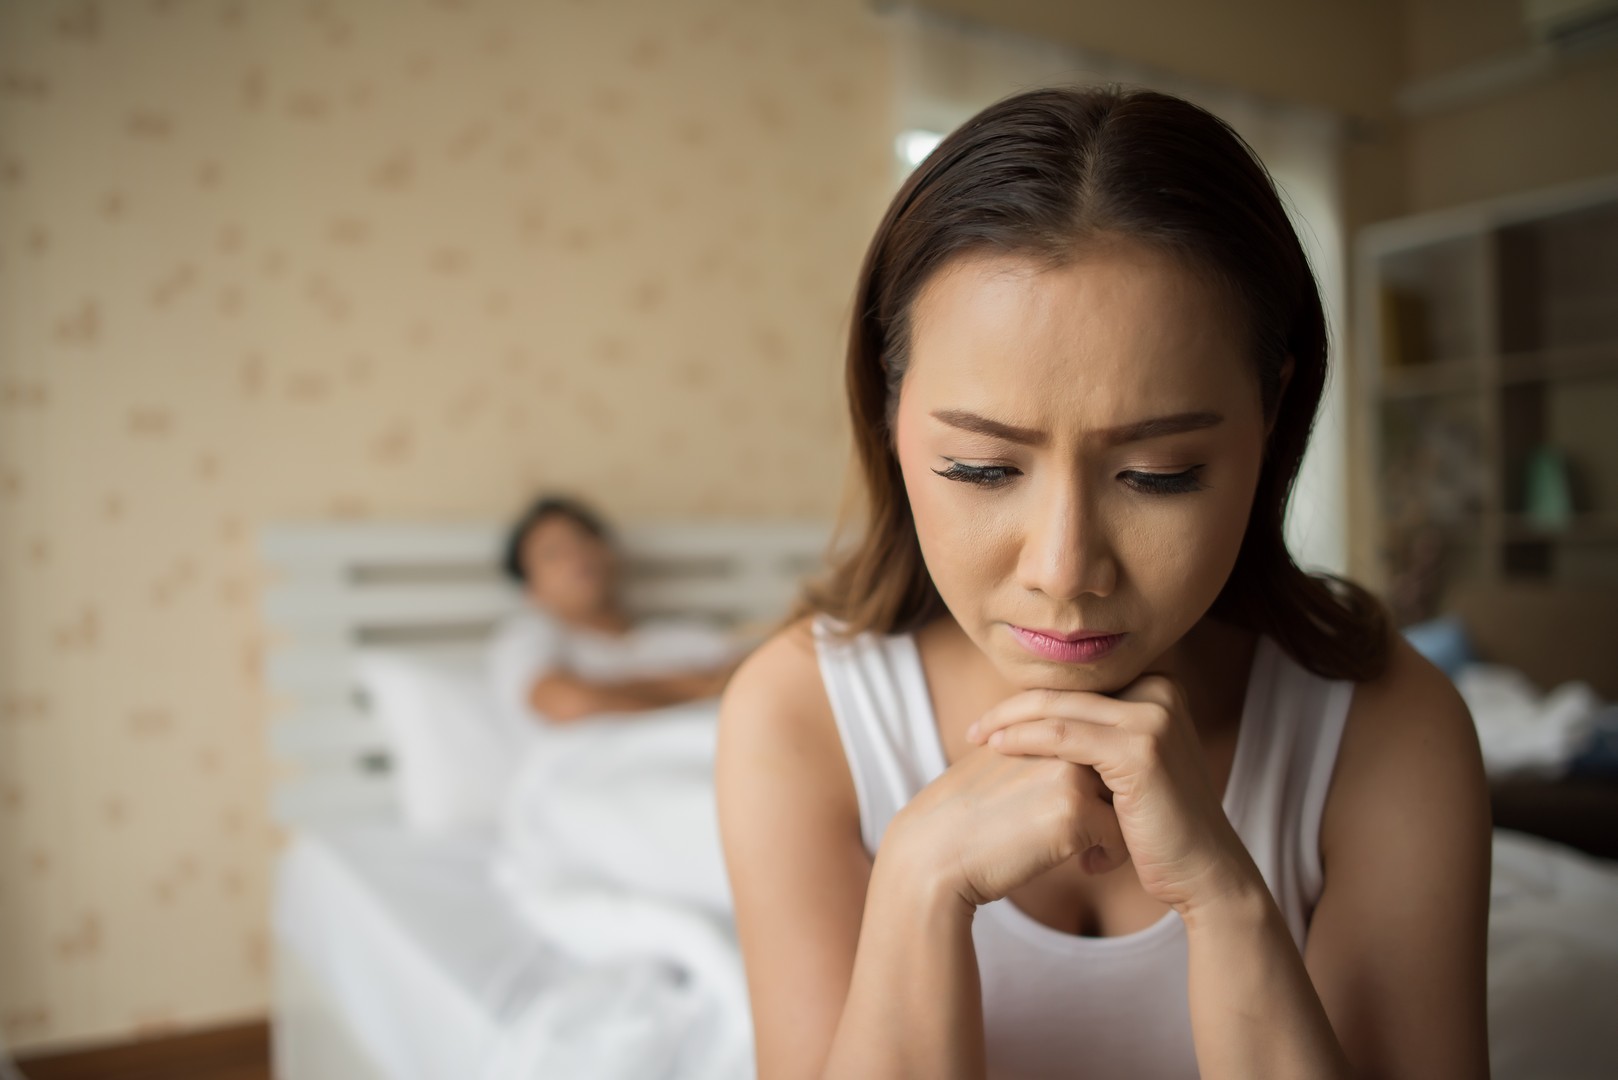 Как расстаться с мужем без скандала: советы психолога от Plachu.net